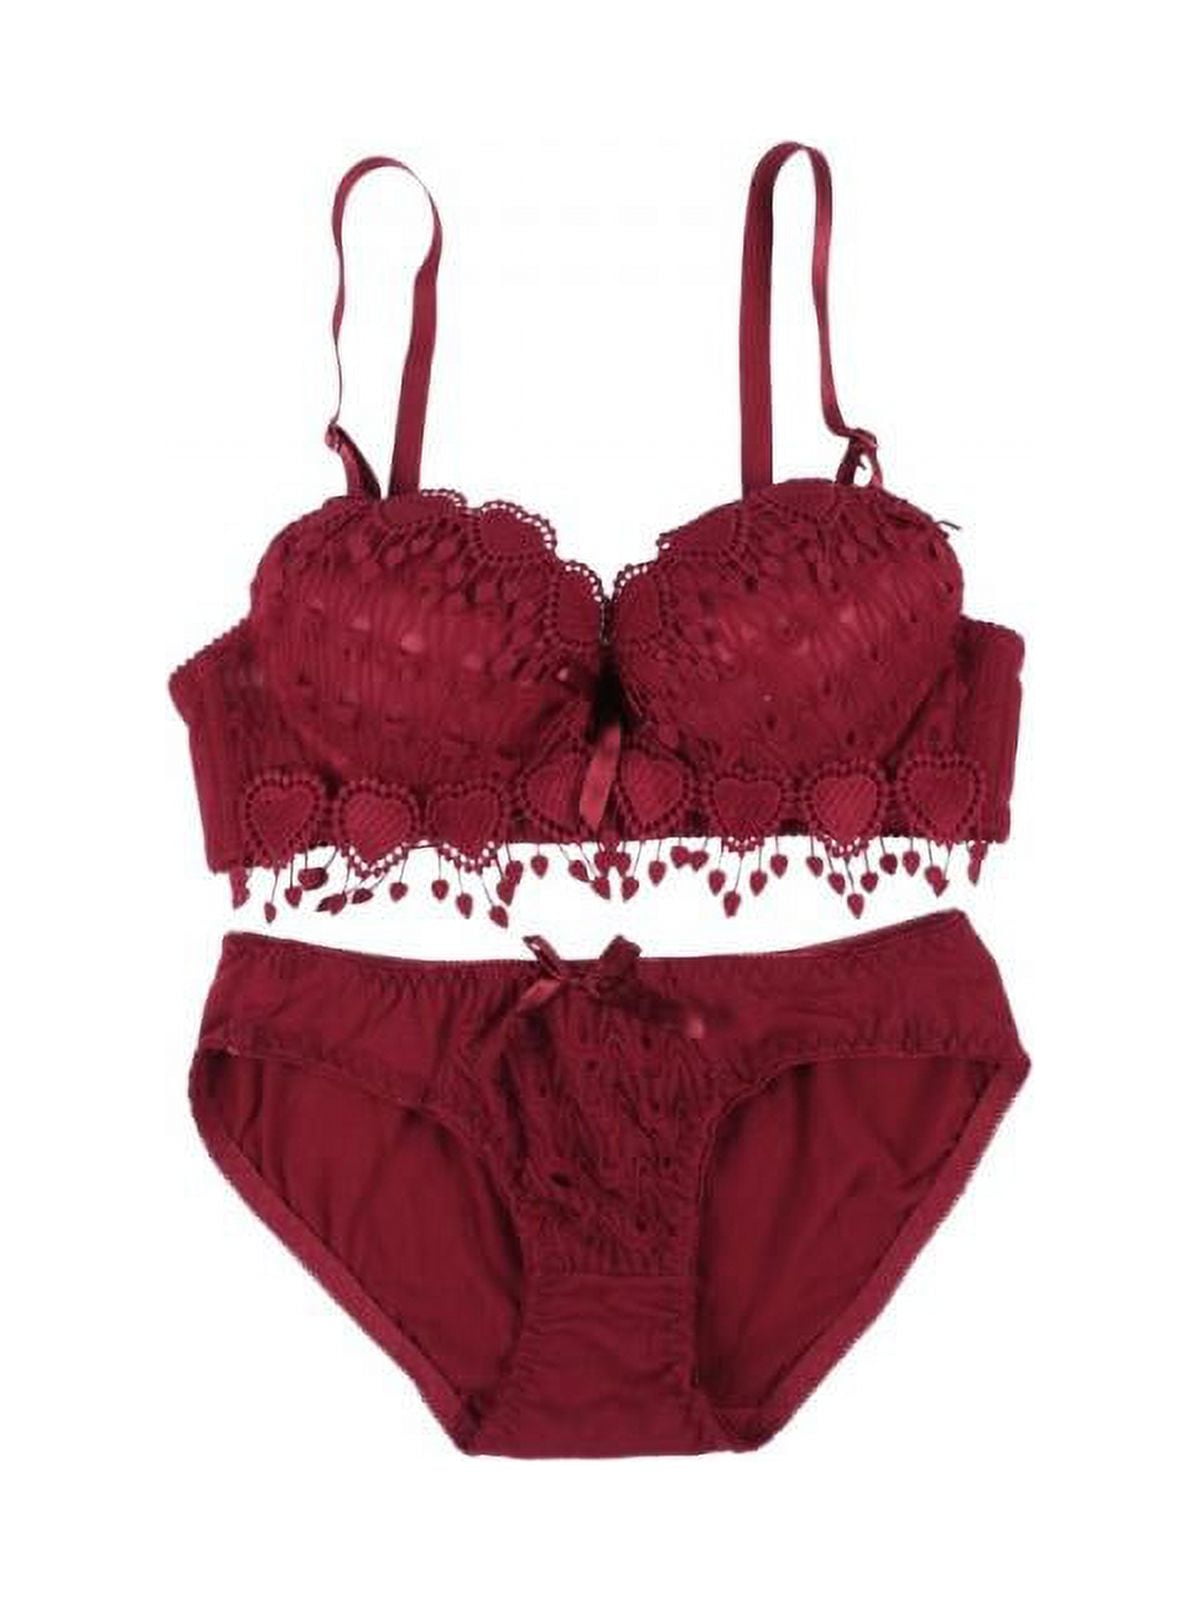 VICOODA Women's 2 Piece Lingerie Set for Honeymoon Boudoir Top Bra Pants  Underwear Set Lace Flowers Racy Sleepwear Set